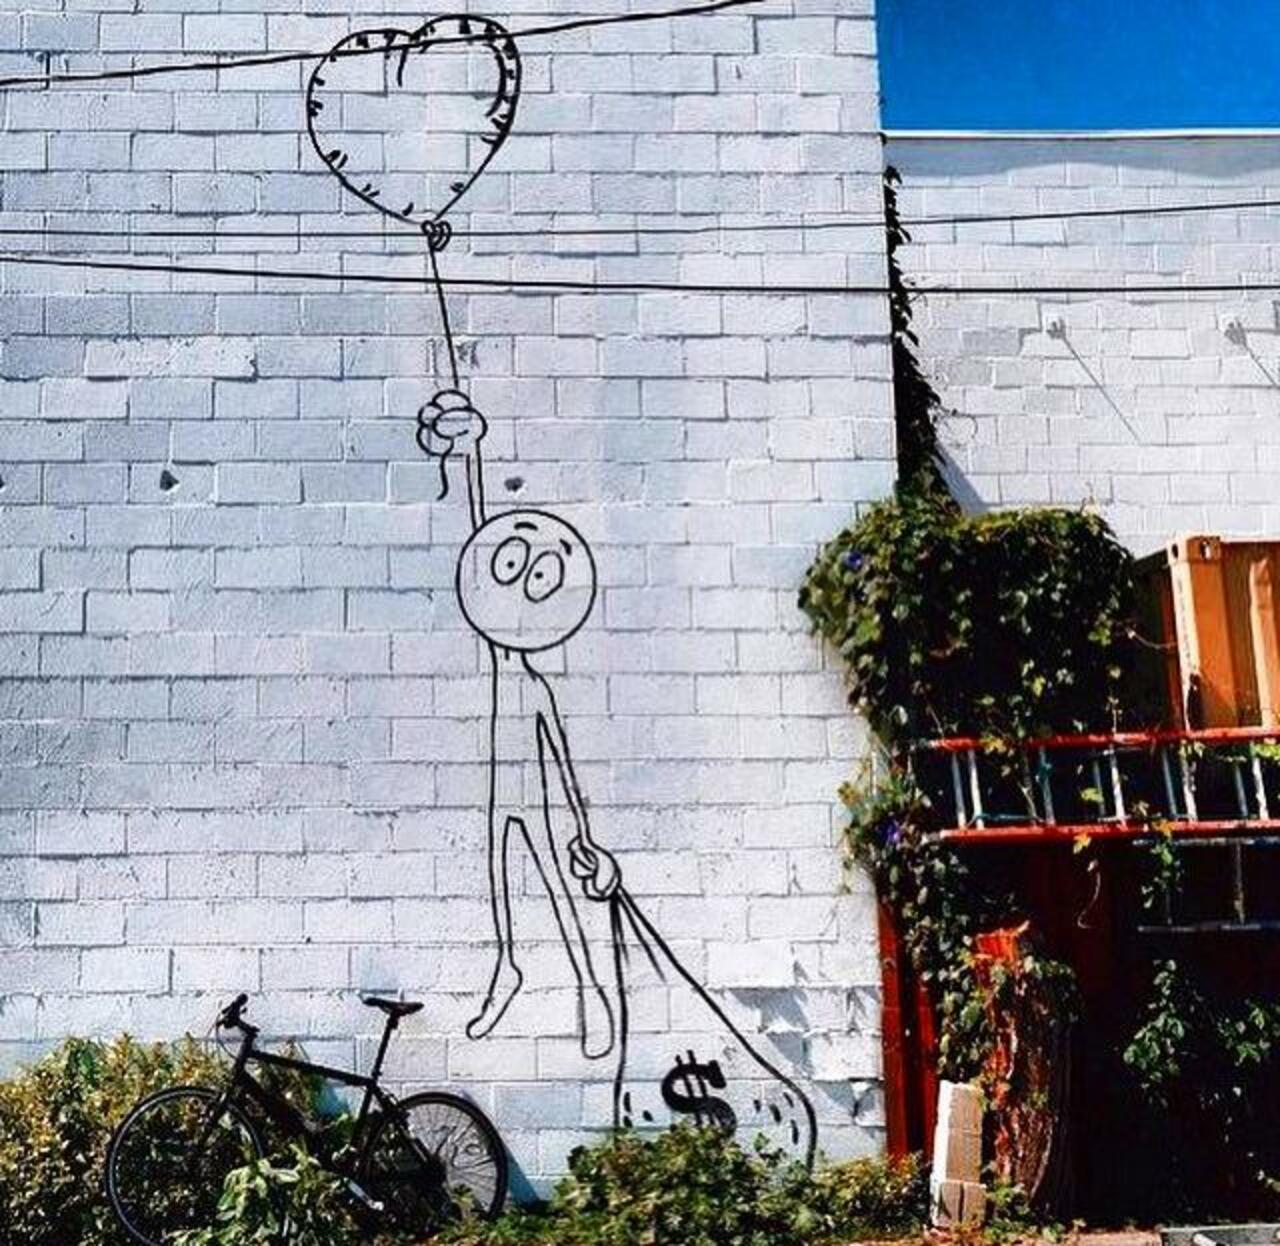 Love or money?
Street Art by Kaia Spire in LA 

#art #arte #graffiti #streetart http://t.co/rrncRFahKm